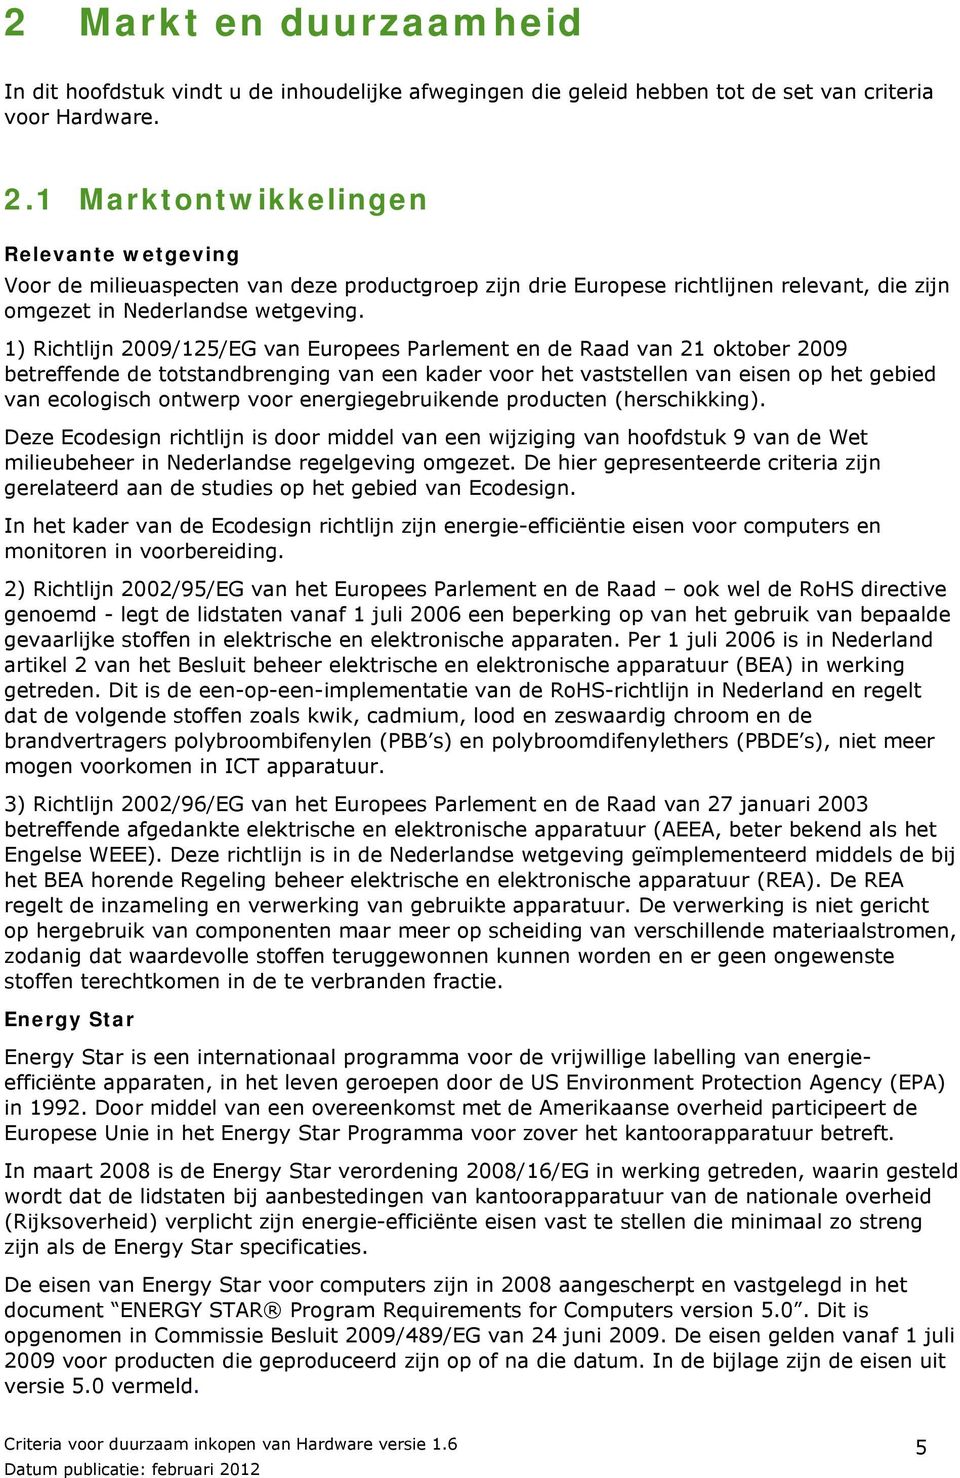 1) Richtlijn 2009/125/EG van Europees Parlement en de Raad van 21 oktober 2009 betreffende de totstandbrenging van een kader voor het vaststellen van eisen op het gebied van ecologisch ontwerp voor